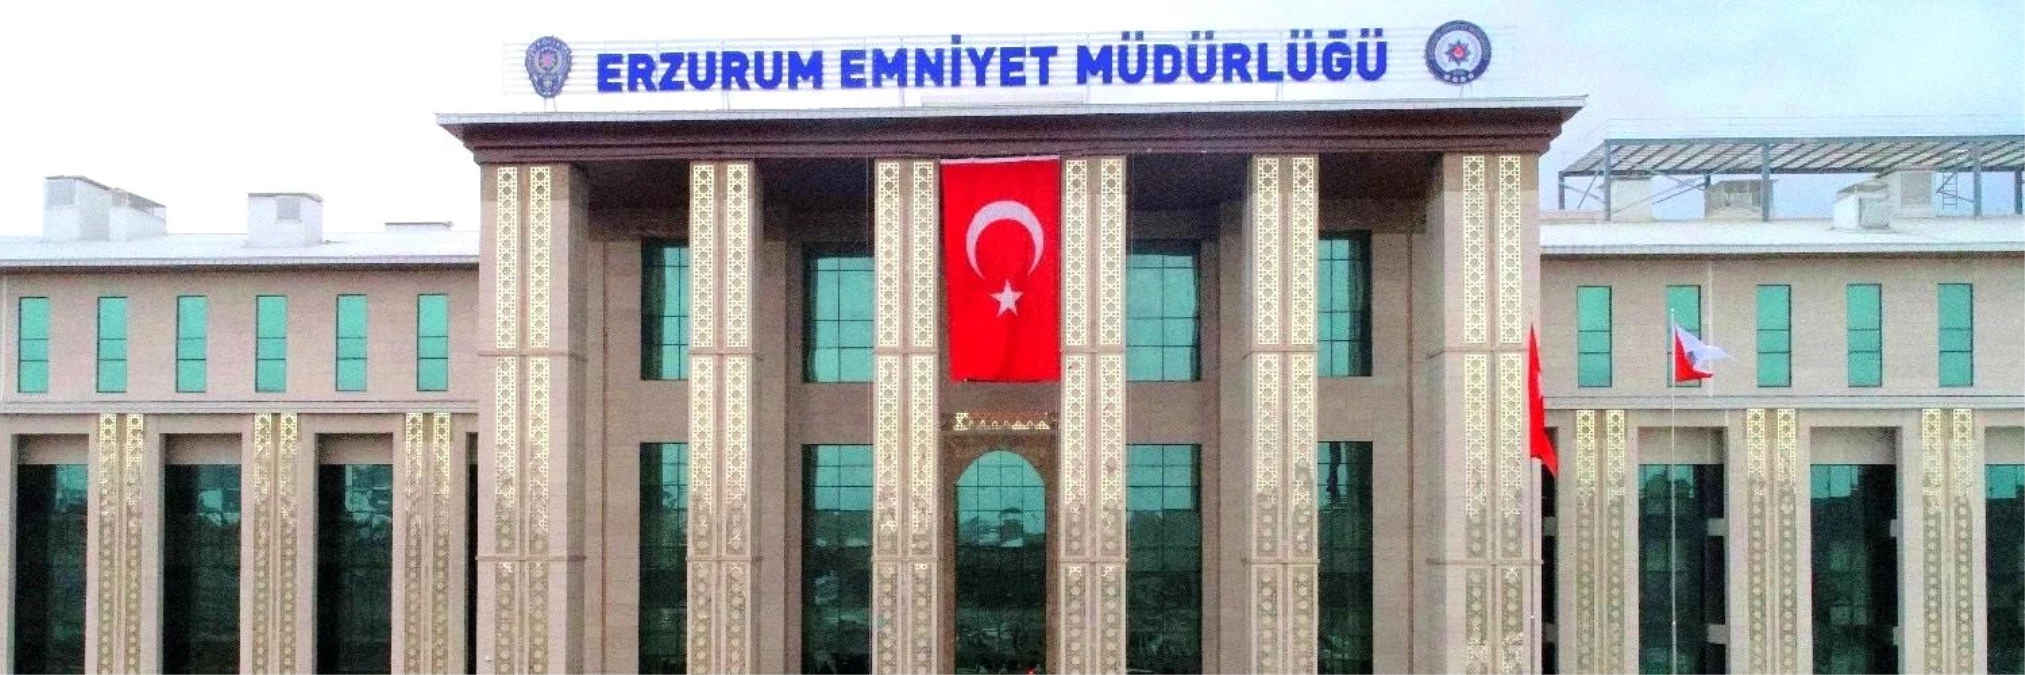 Erzurum’da FETÖ/PDY Silahlı Terör Örgütüne Yönelik Soruşturma